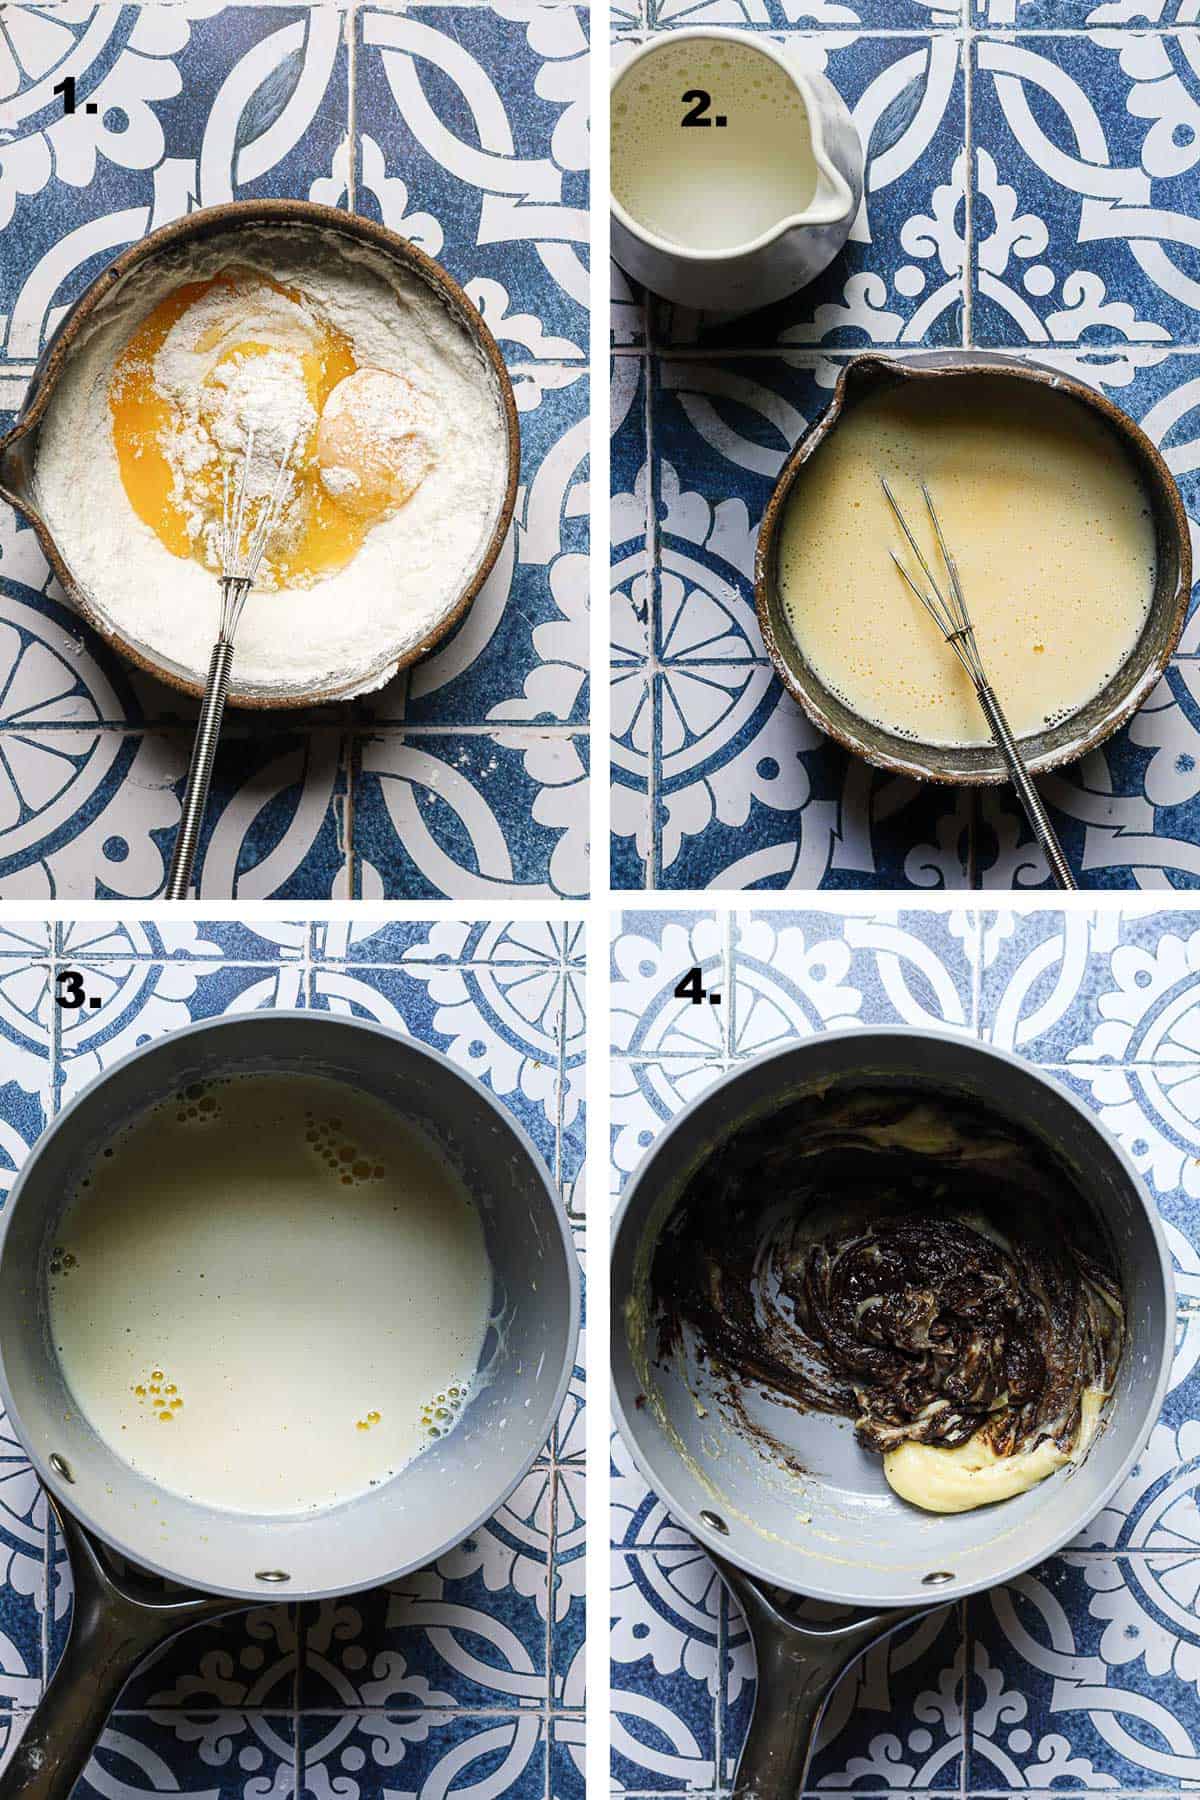 How to mkae chocolate pastry cream